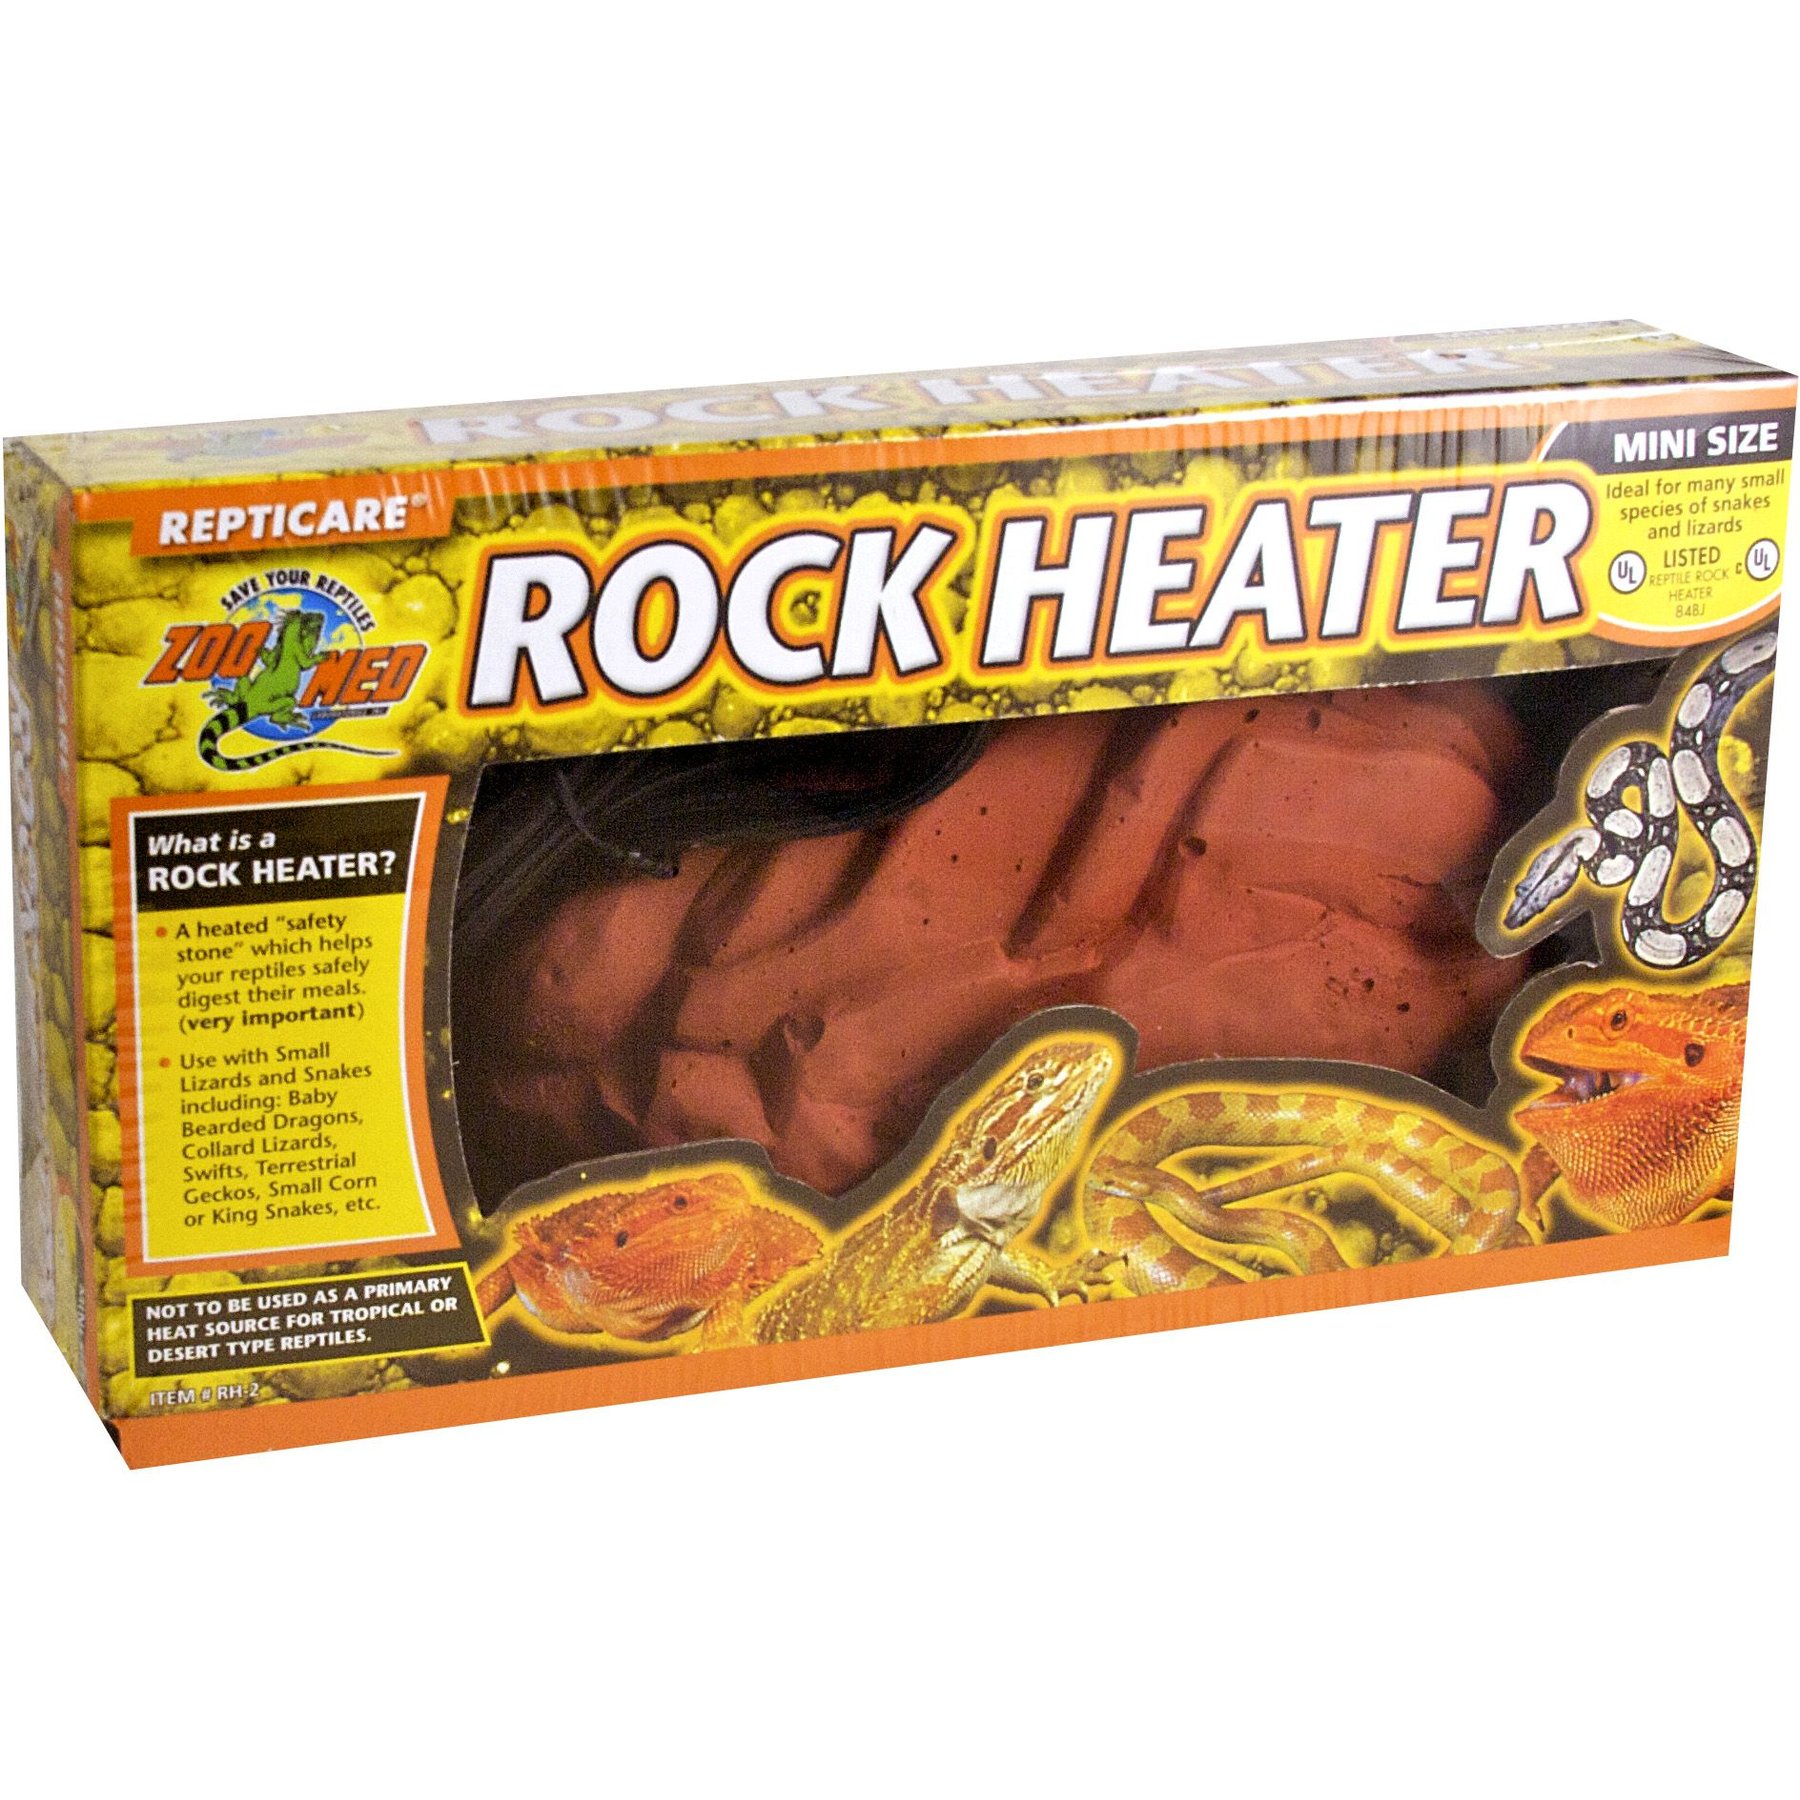 ZILLA Terrarium Heat Mat Reptile Heater, 4-watt 